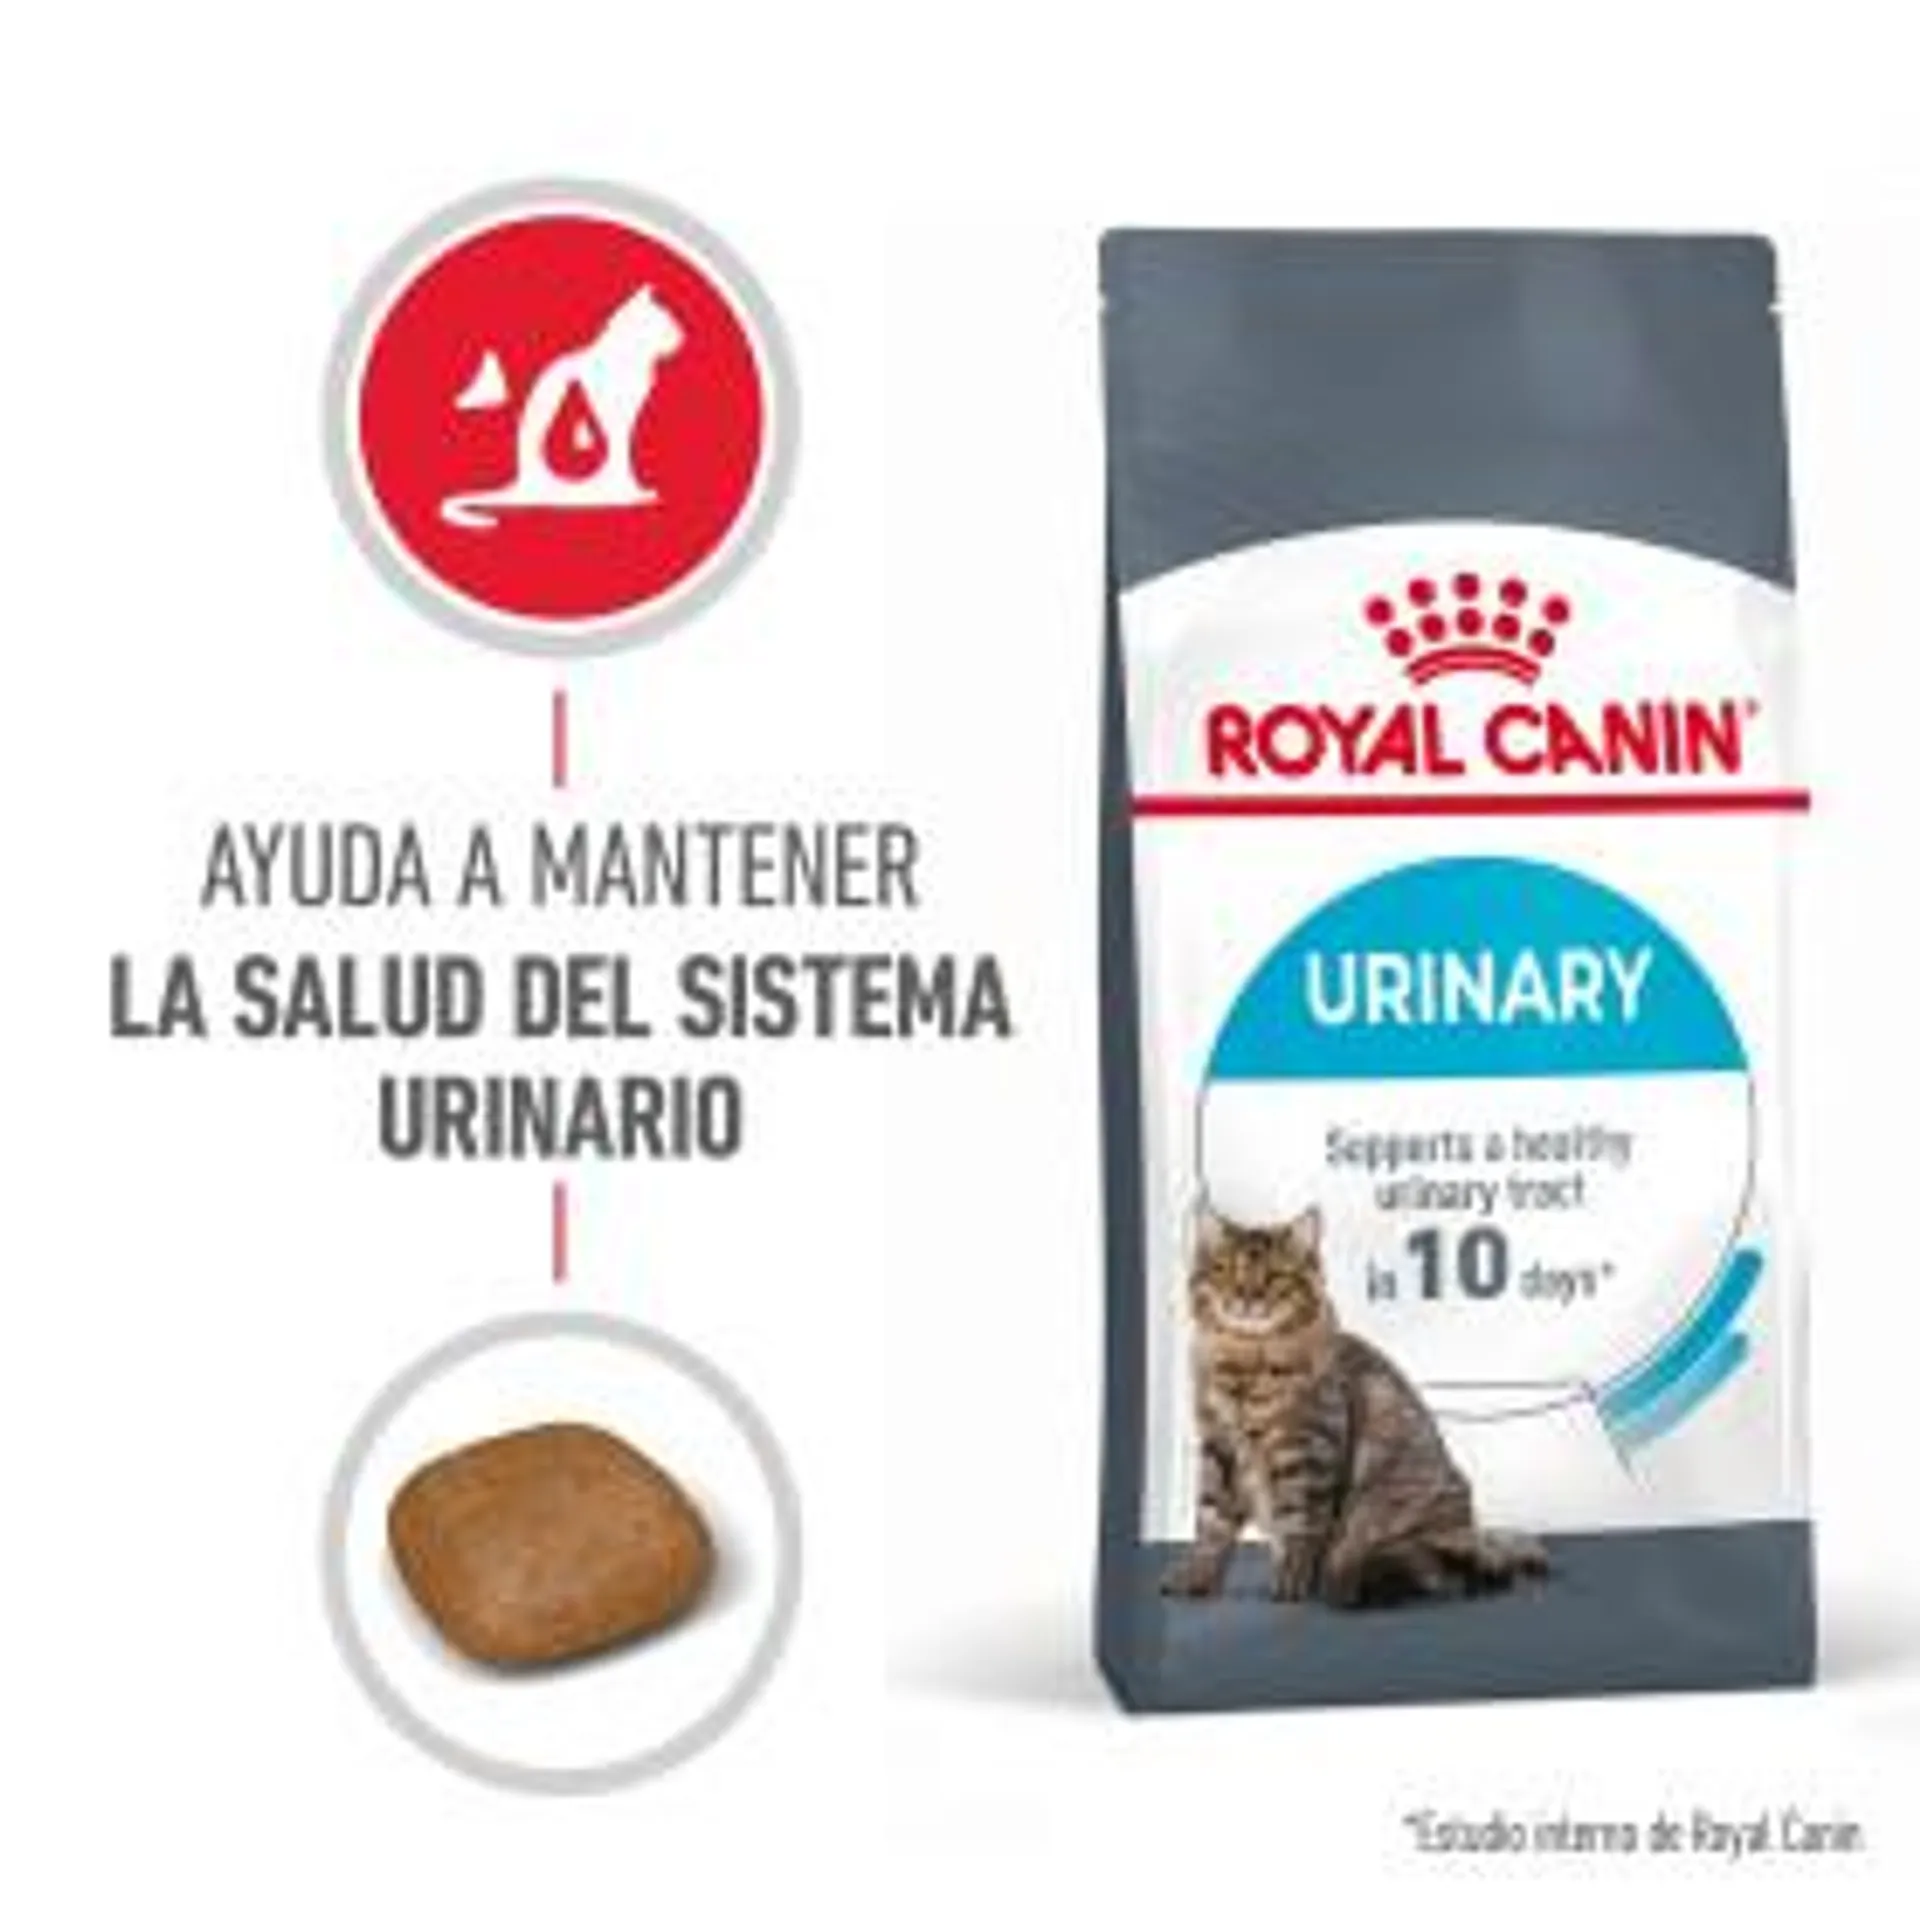 Royal Canin Urinary Care pienso gato adulto de sensibilidad urinaria